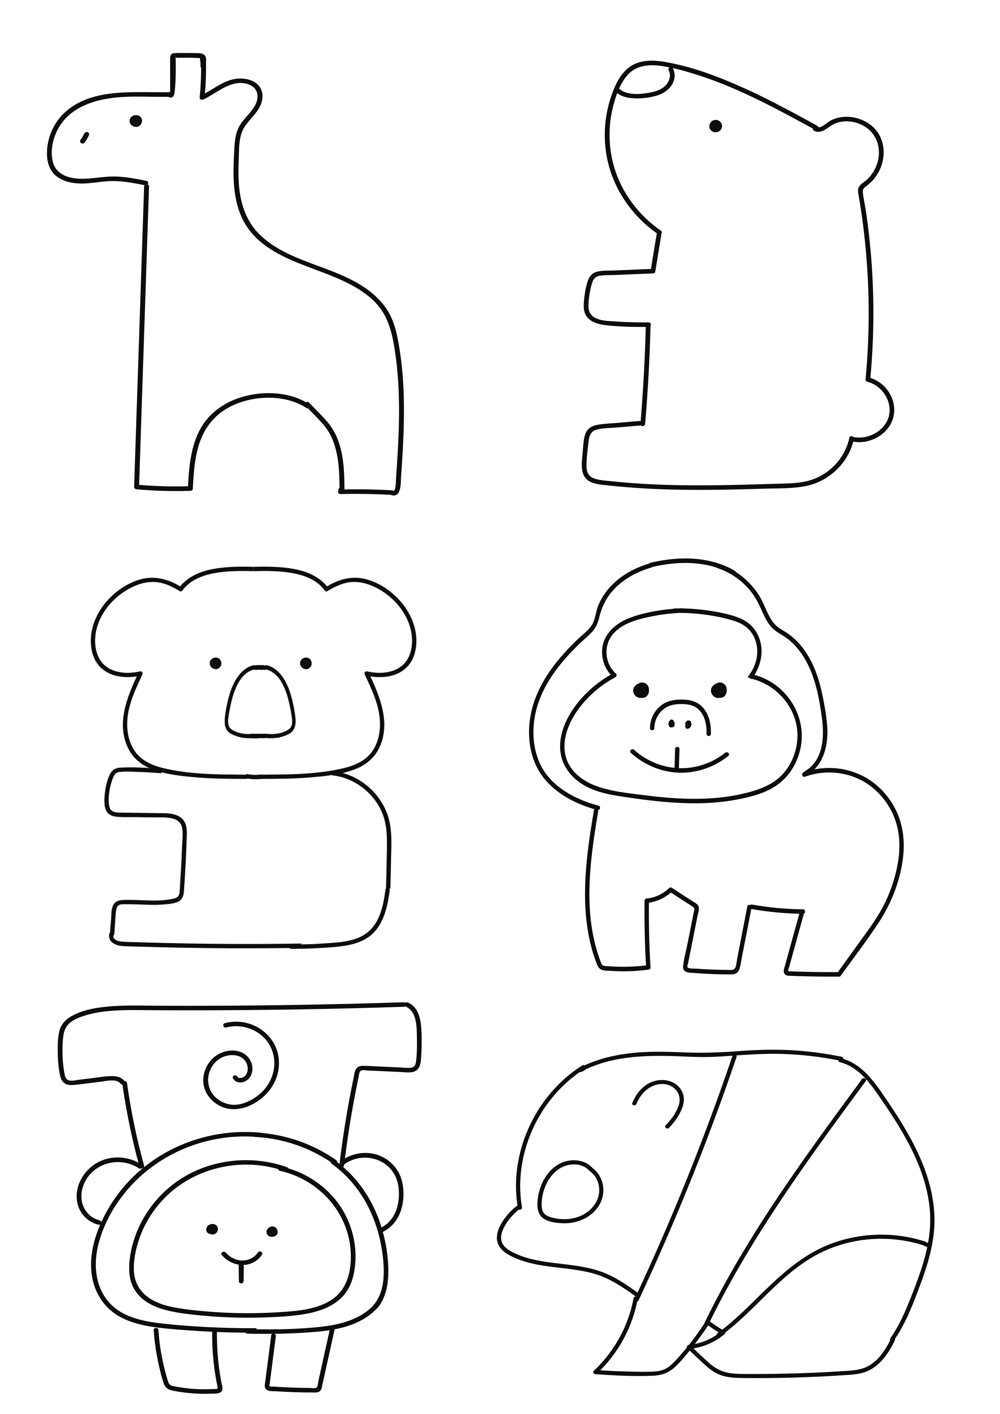 木のおもちゃ店　動物イラスト(15種類)のデザイン